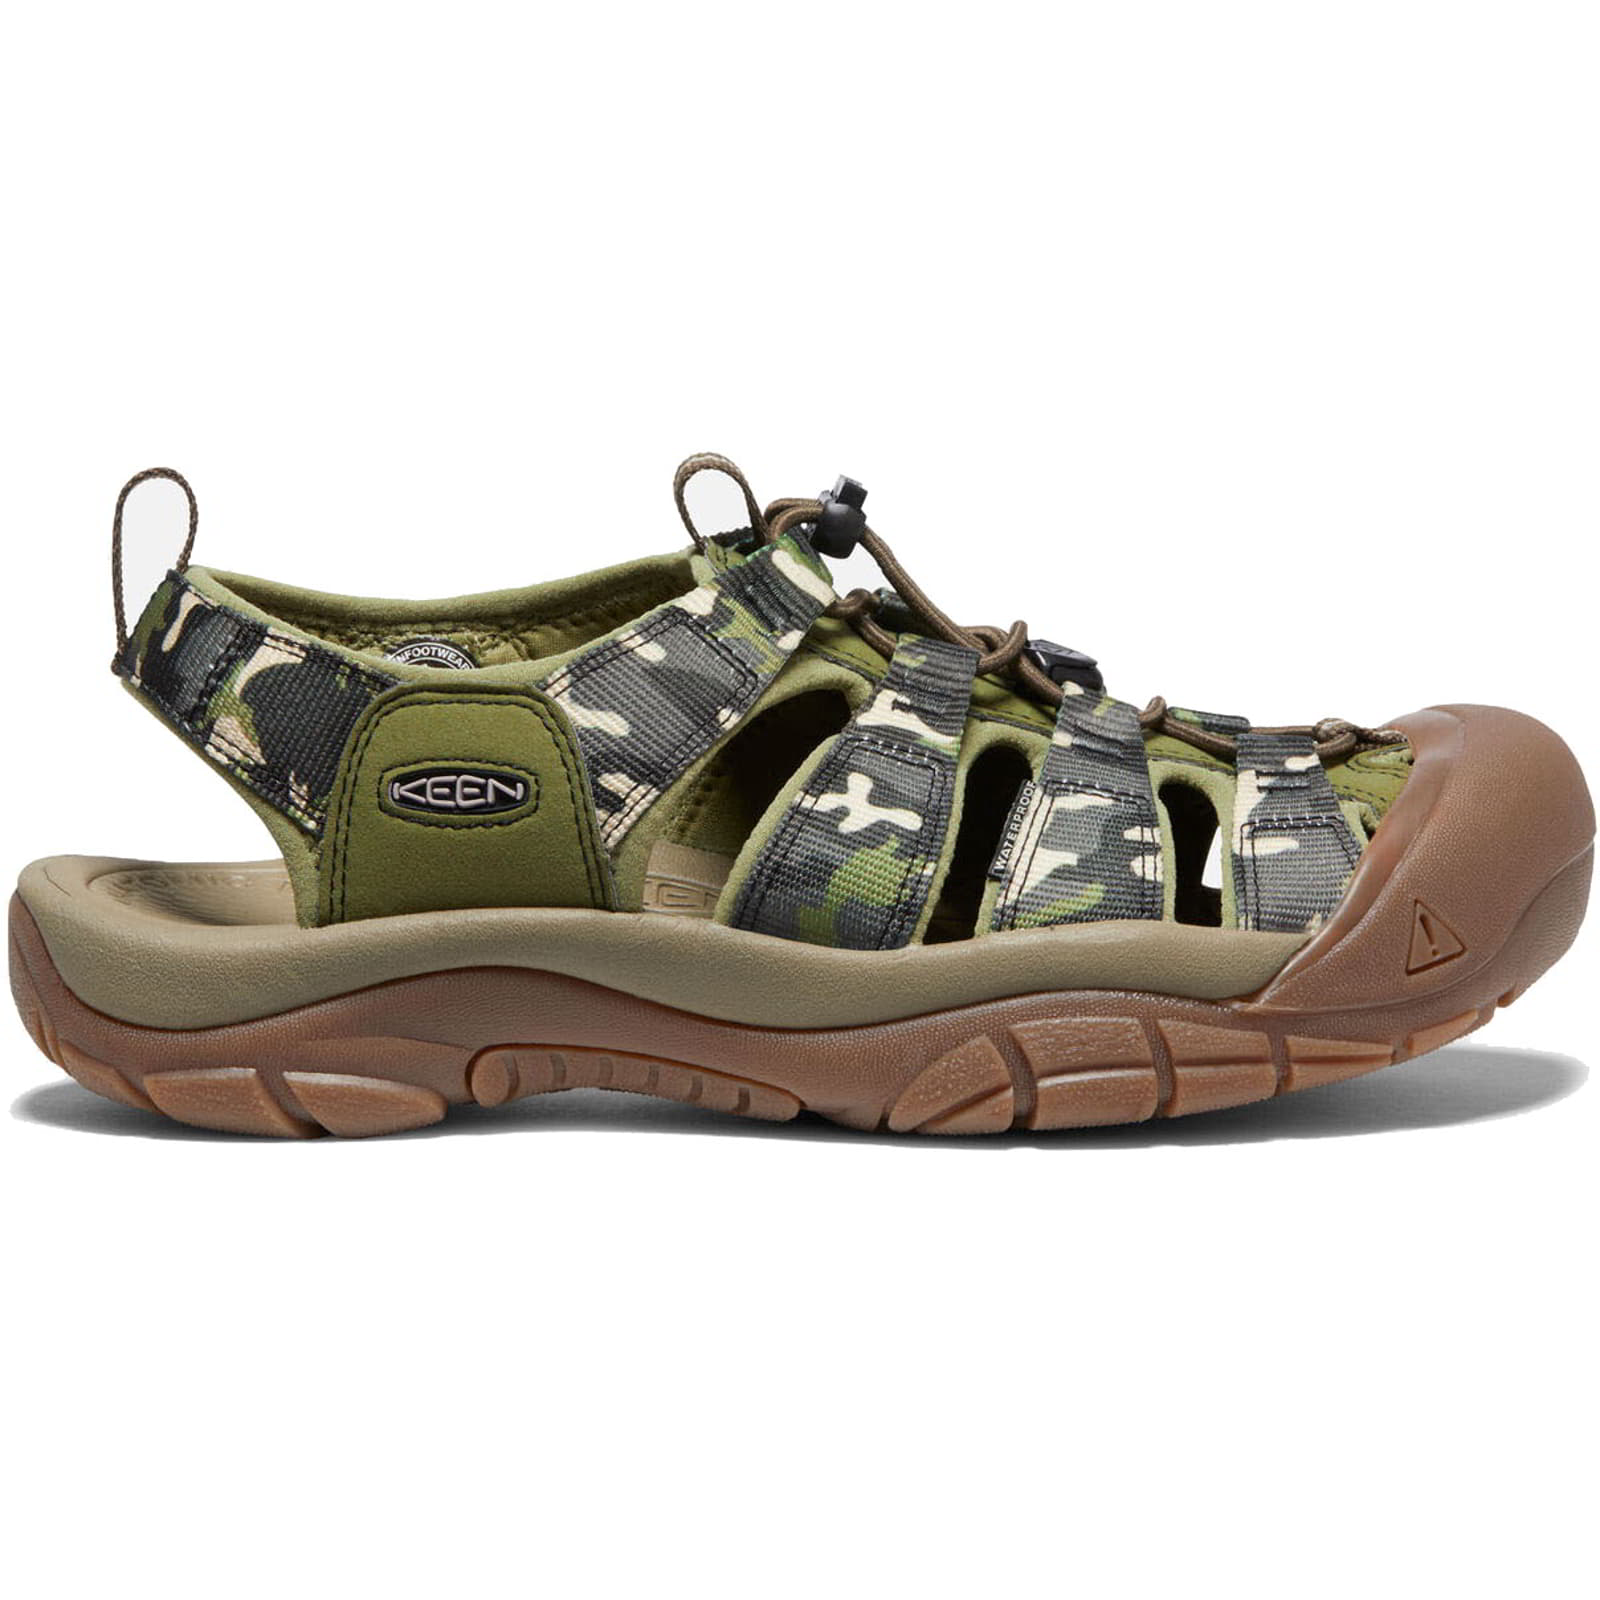 Keen Mens Newport H2 Sandals - Camo Olive Drab 2951